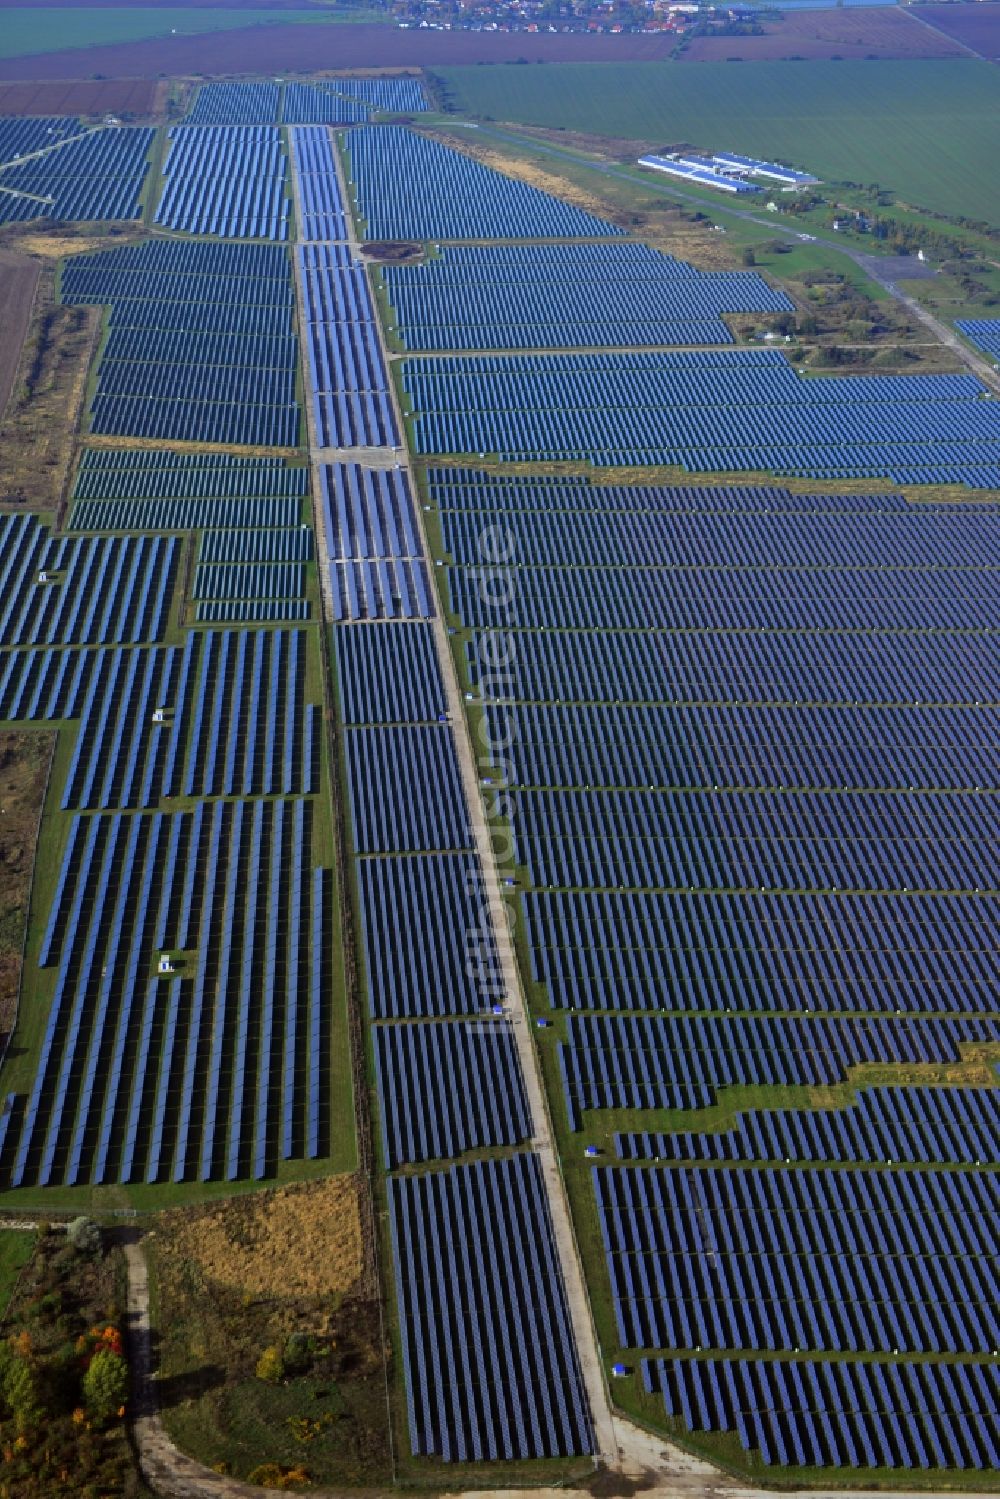 Köthen von oben - Solarpark auf dem Flugplatz Köthen im Bundesland Sachsen-Anhalt